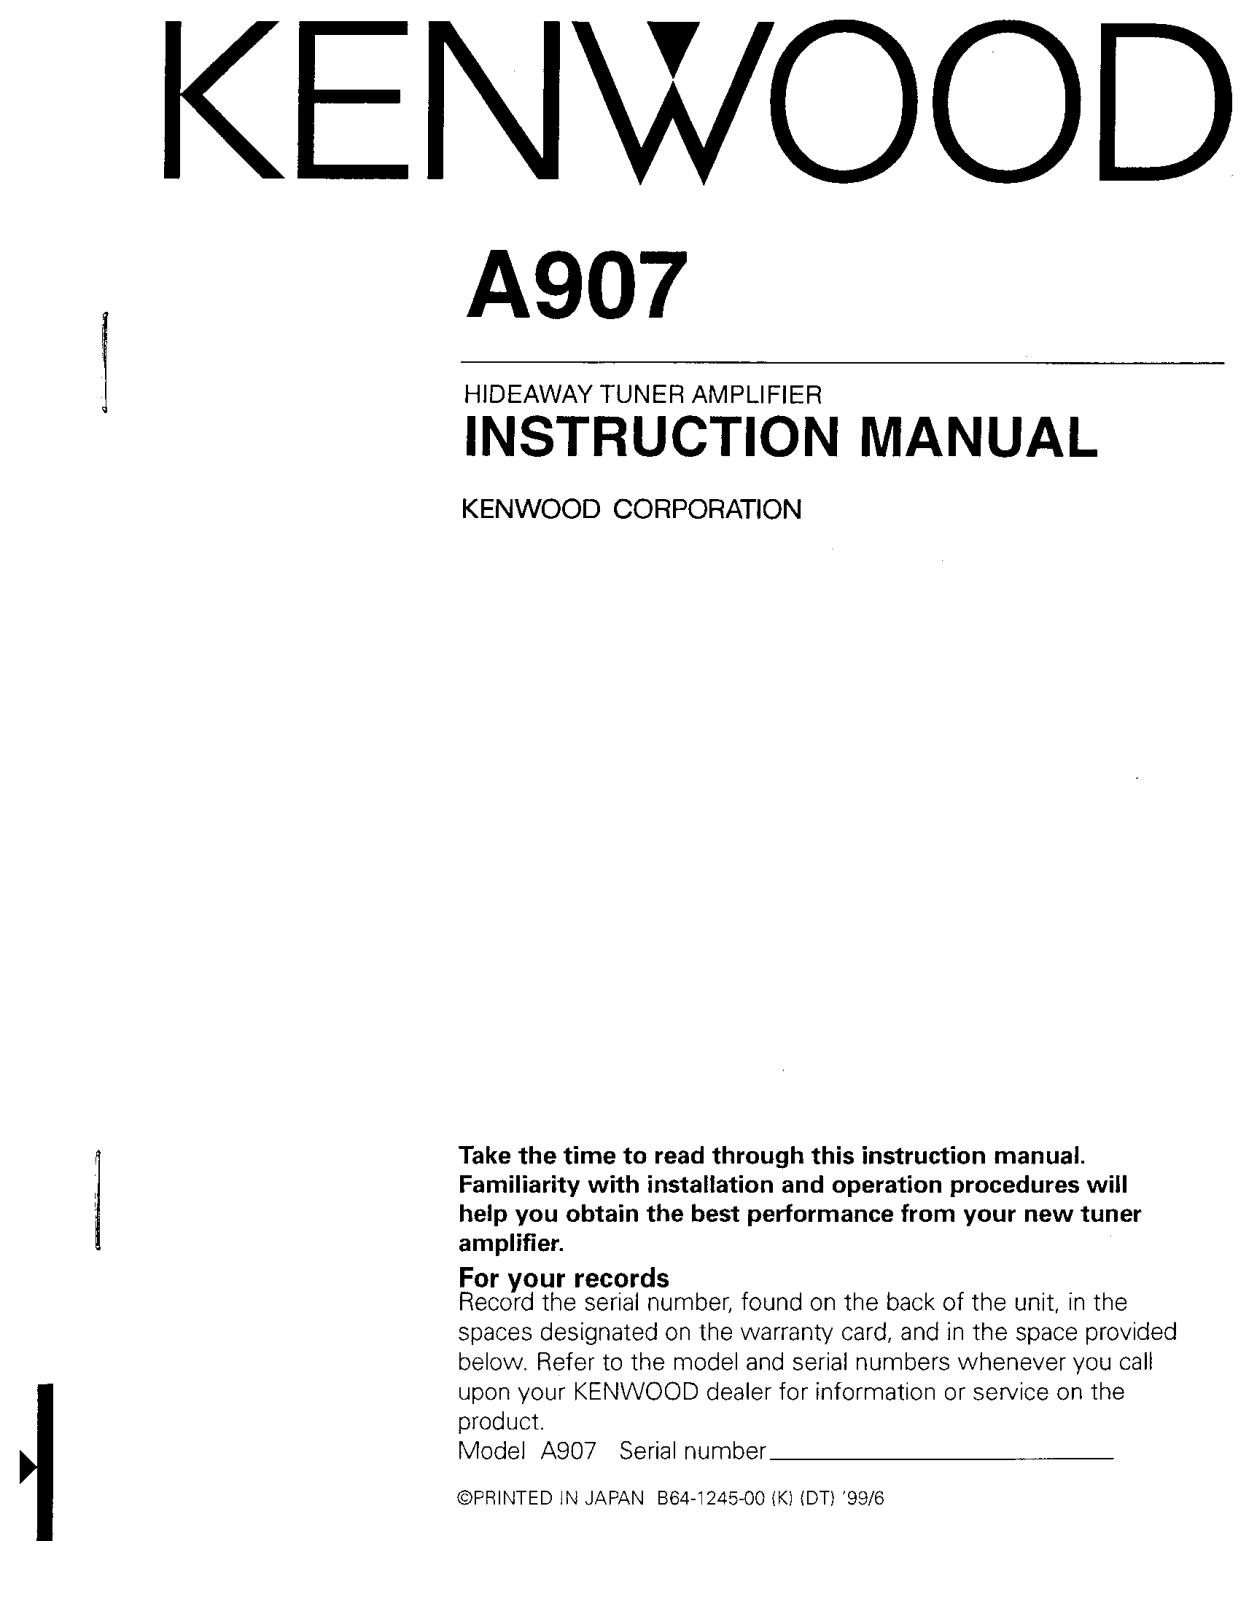 Kenwood P907, A907, VZ907 Owner's Manual